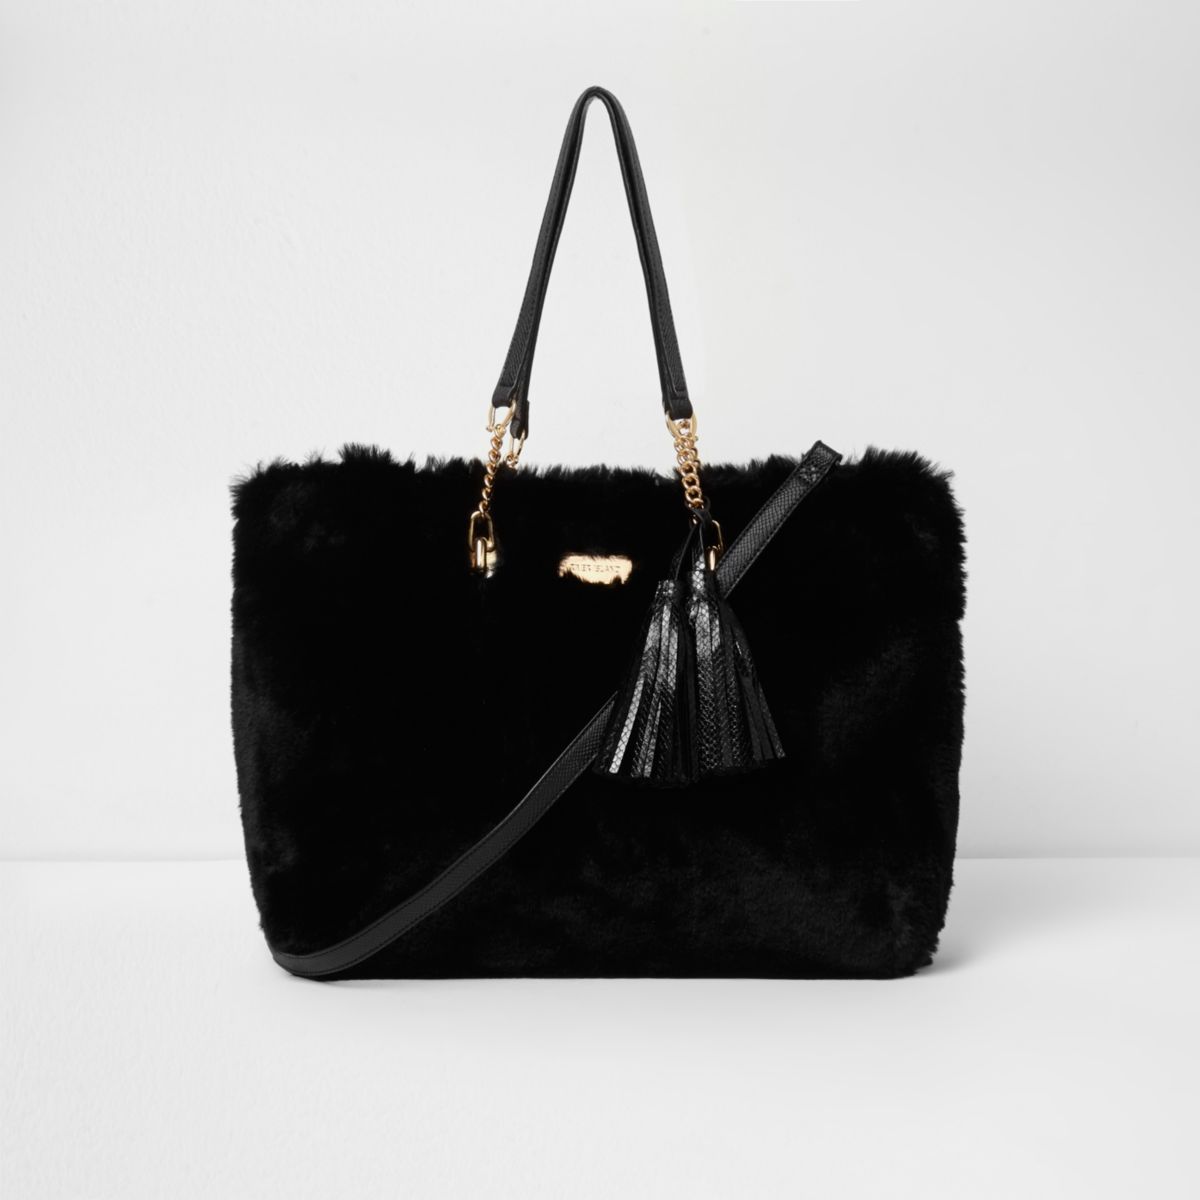 Black faux fur front tassel large tote bag - Bags & Purses - Sale - women